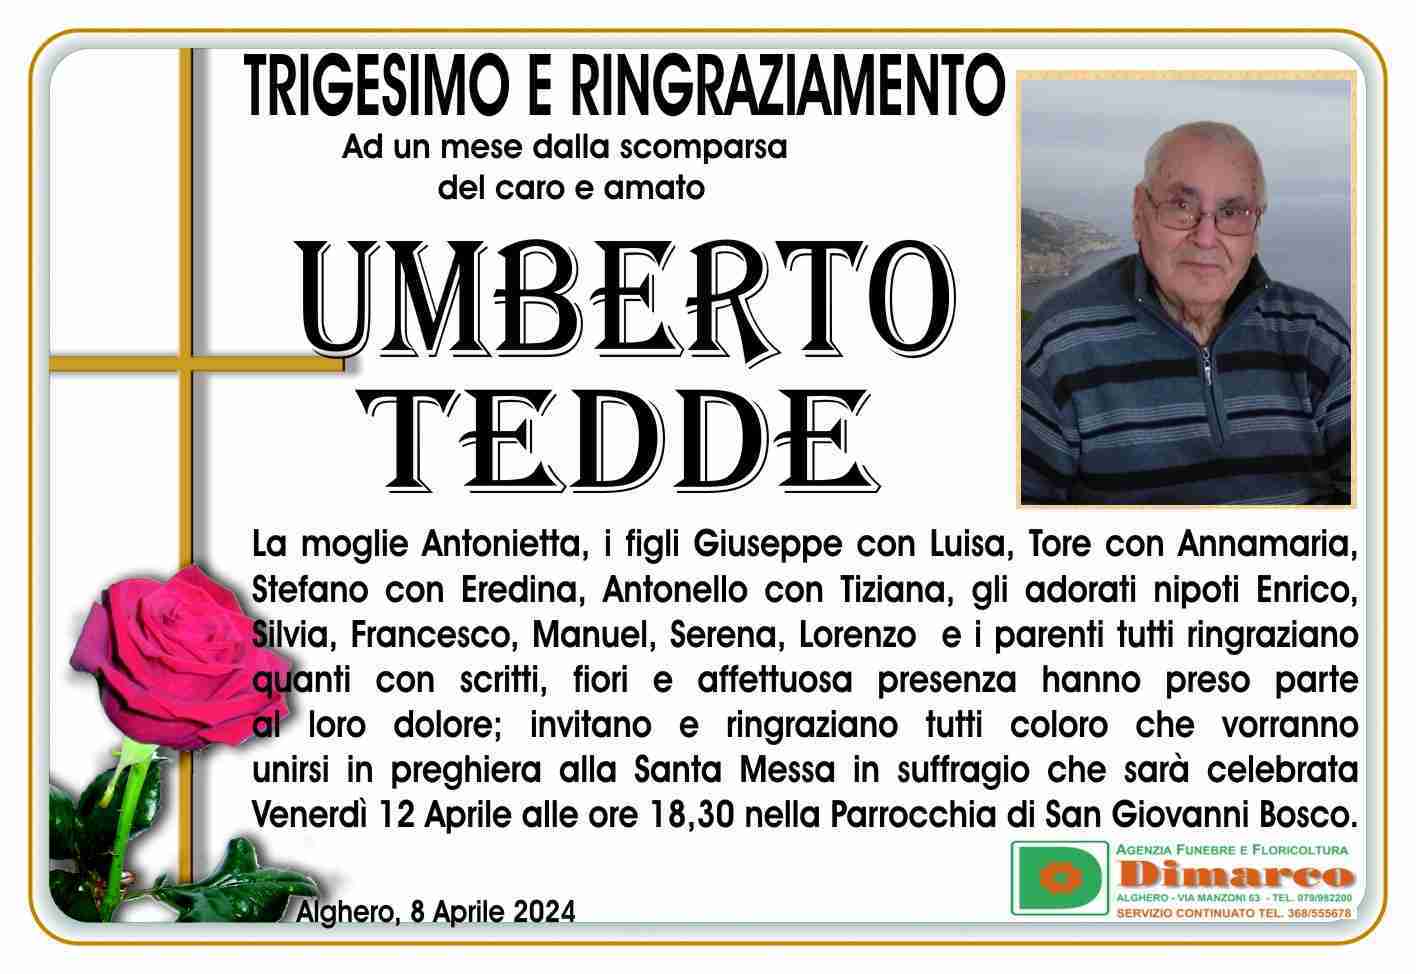 Umberto Tedde